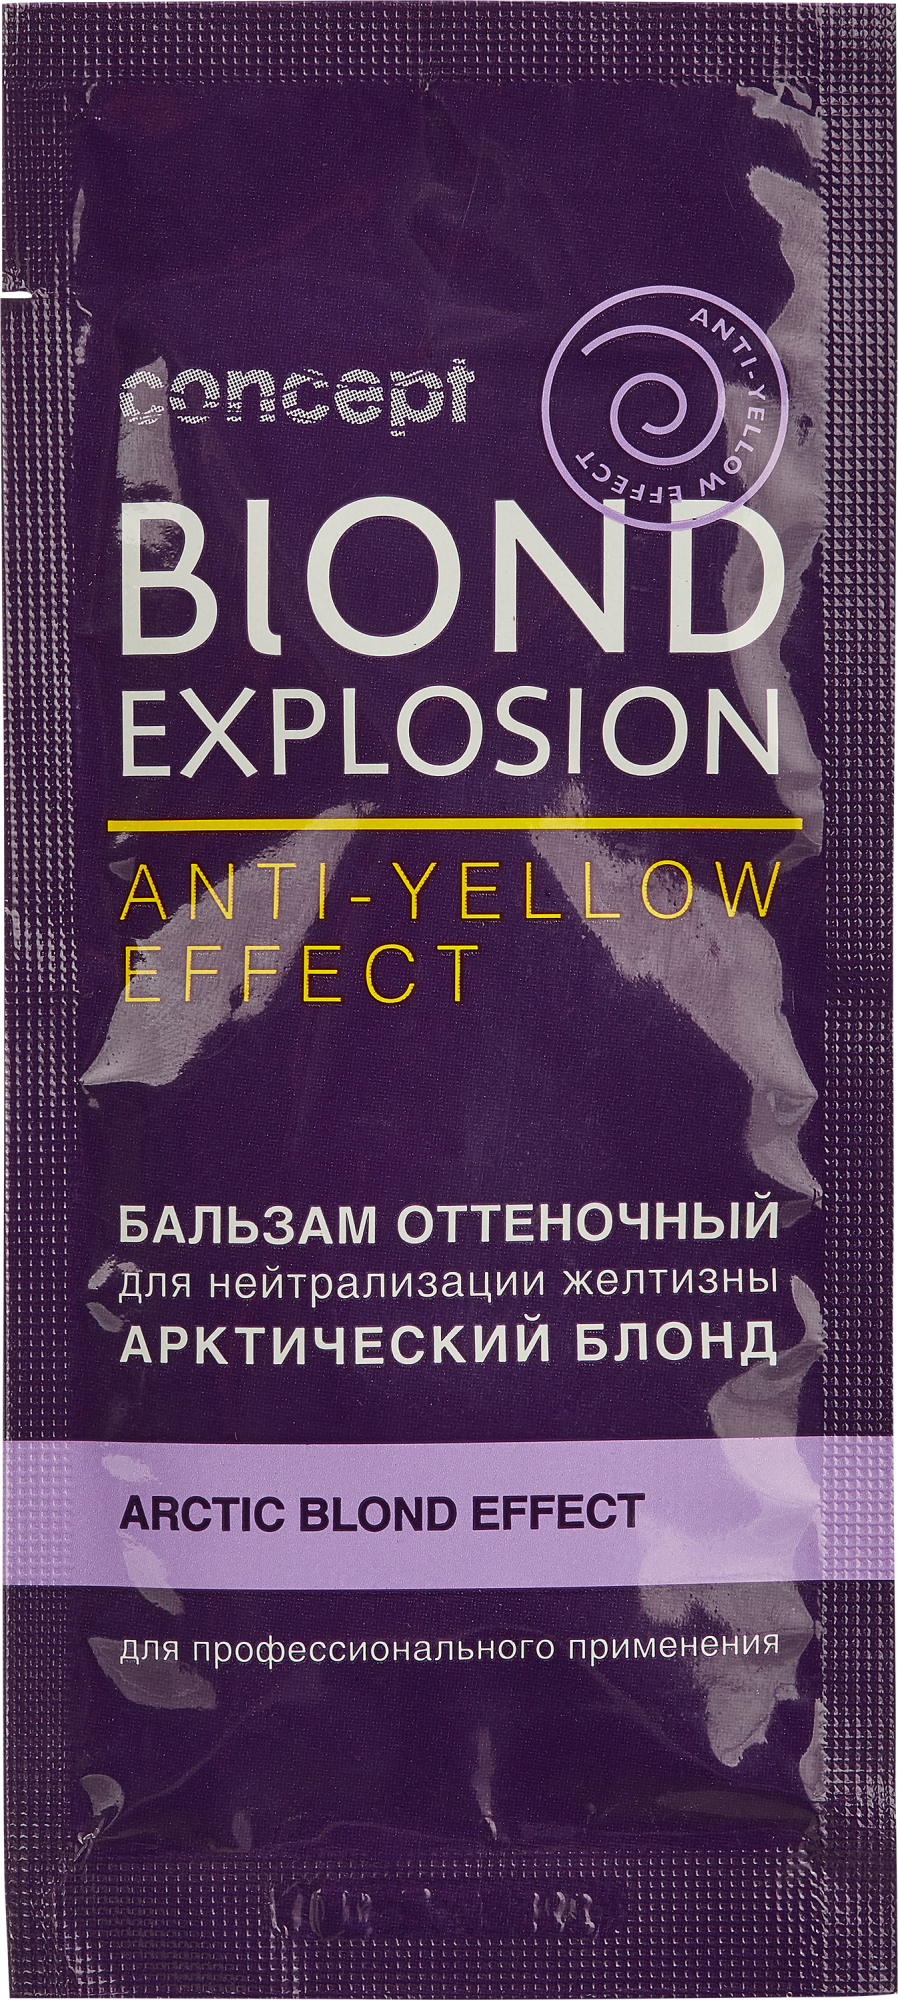 Концепт / Concept Anti-Yellow Effect - Бальзам оттеночный Арктический блонд 15 мл